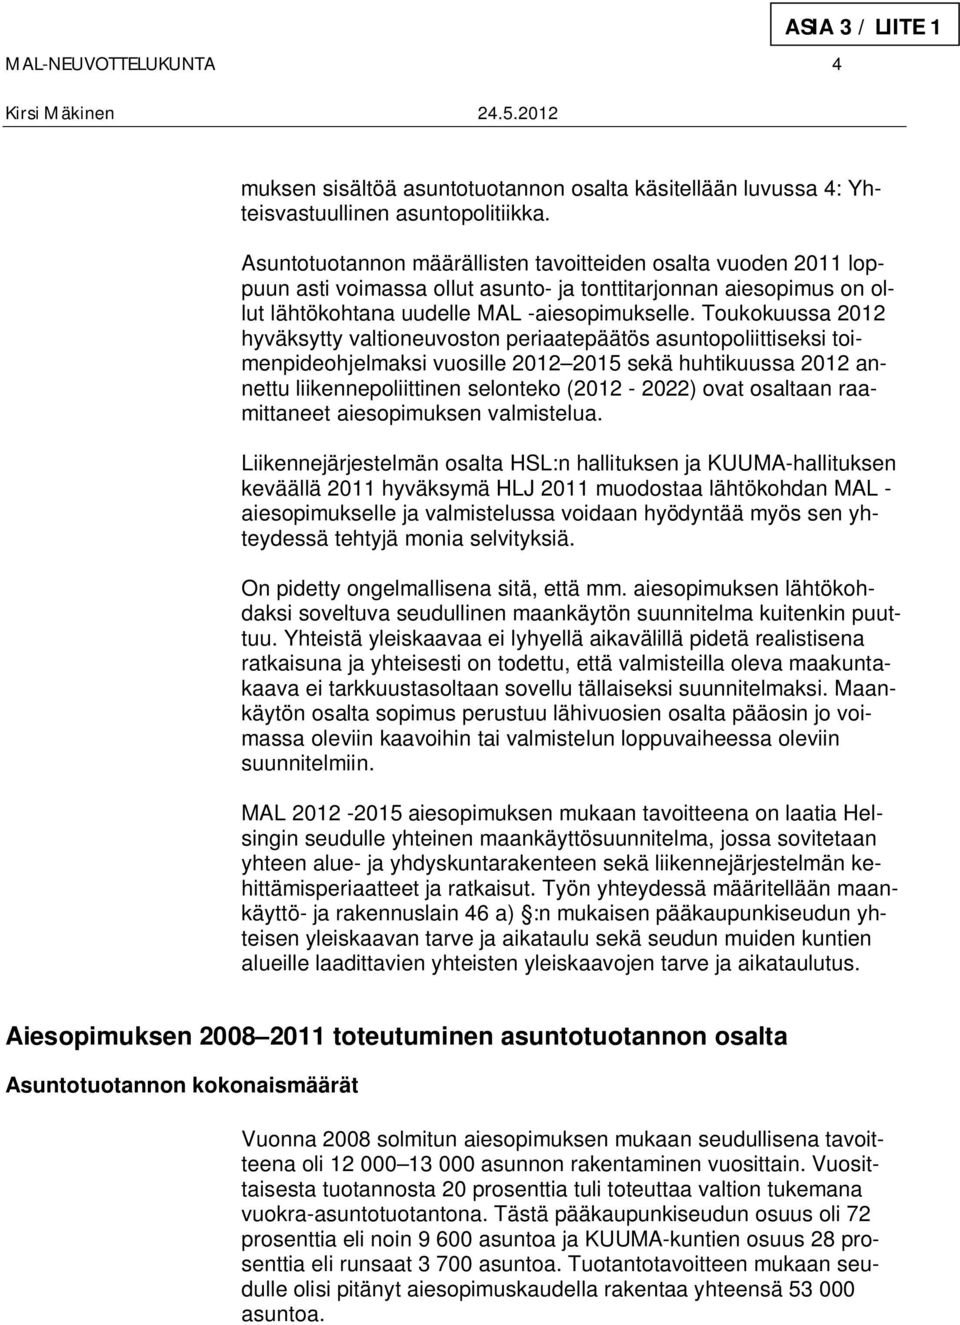 Toukokuussa 2012 hyväksytty valtioneuvoston periaatepäätös asuntopoliittiseksi toimenpideohjelmaksi vuosille 2012 2015 sekä huhtikuussa 2012 annettu liikennepoliittinen selonteko (2012-2022) ovat